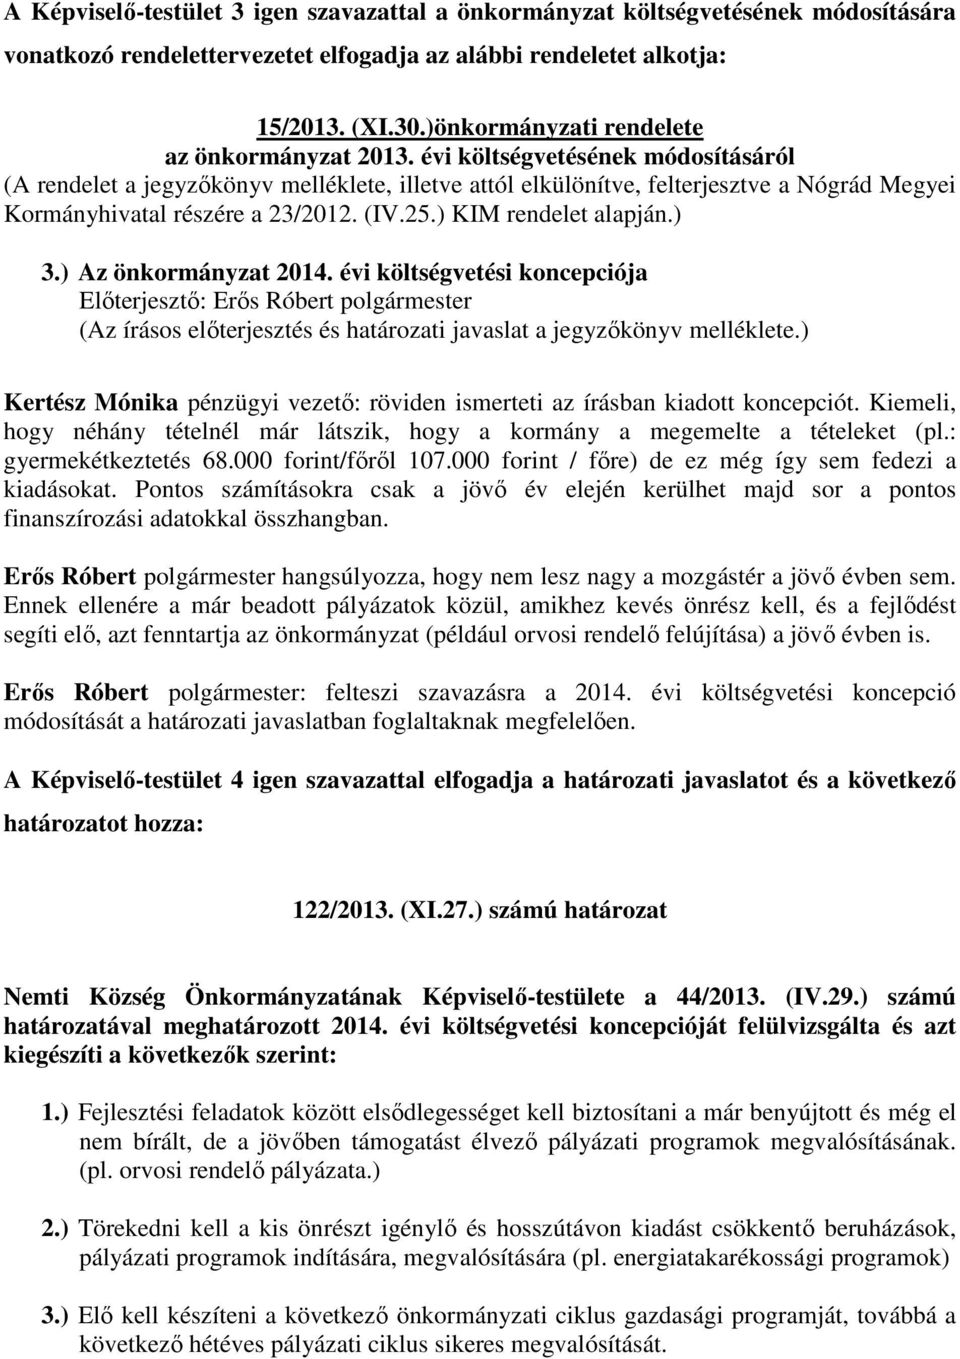 évi költségvetésének módosításáról (A rendelet a jegyzőkönyv melléklete, illetve attól elkülönítve, felterjesztve a Nógrád Megyei Kormányhivatal részére a 23/2012. (IV.25.) KIM rendelet alapján.) 3.